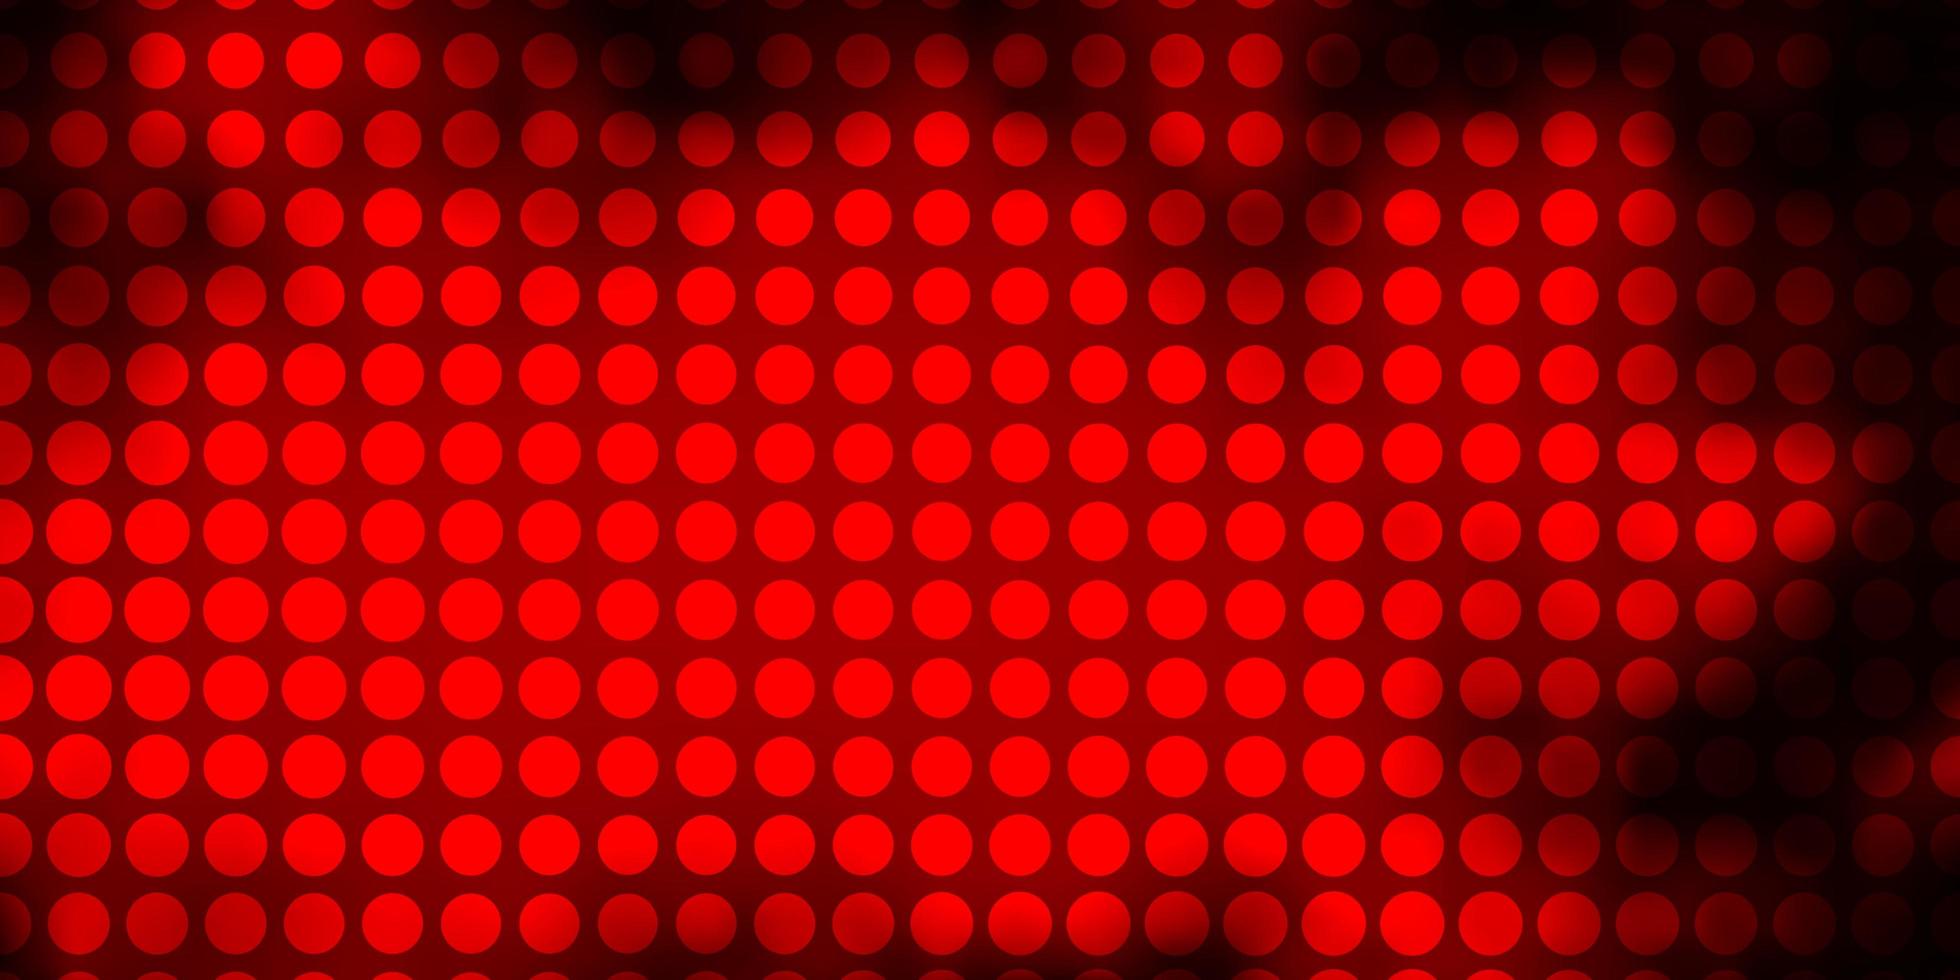 sfondo vettoriale rosso scuro con cerchi illustrazione astratta con macchie colorate in stile natura design per poster banner